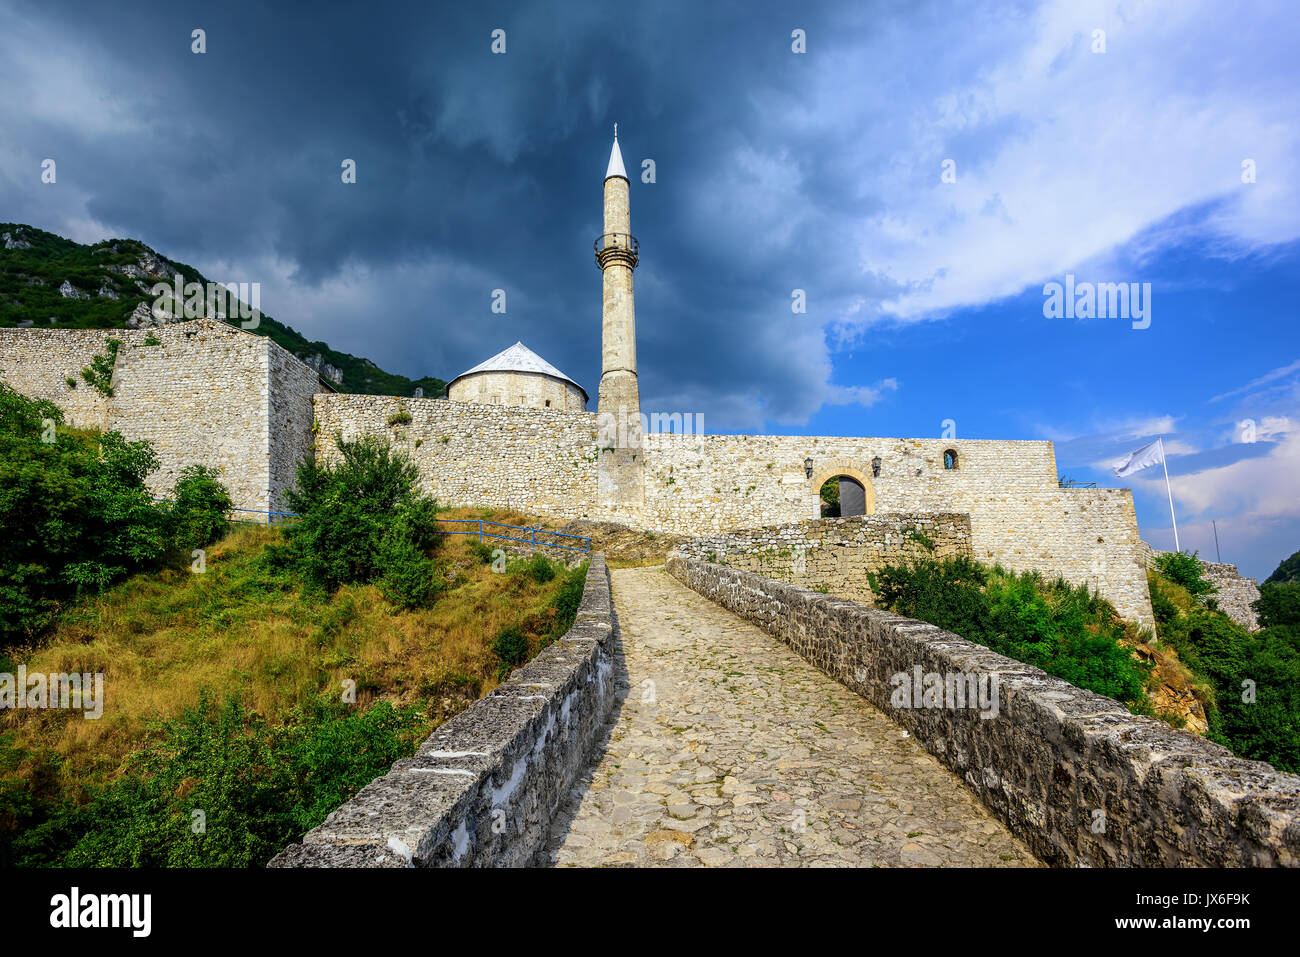 Storico ottomano fortezza in pietra con una moschea di Travnik città vecchia, Bosnia Erzegovina Foto Stock